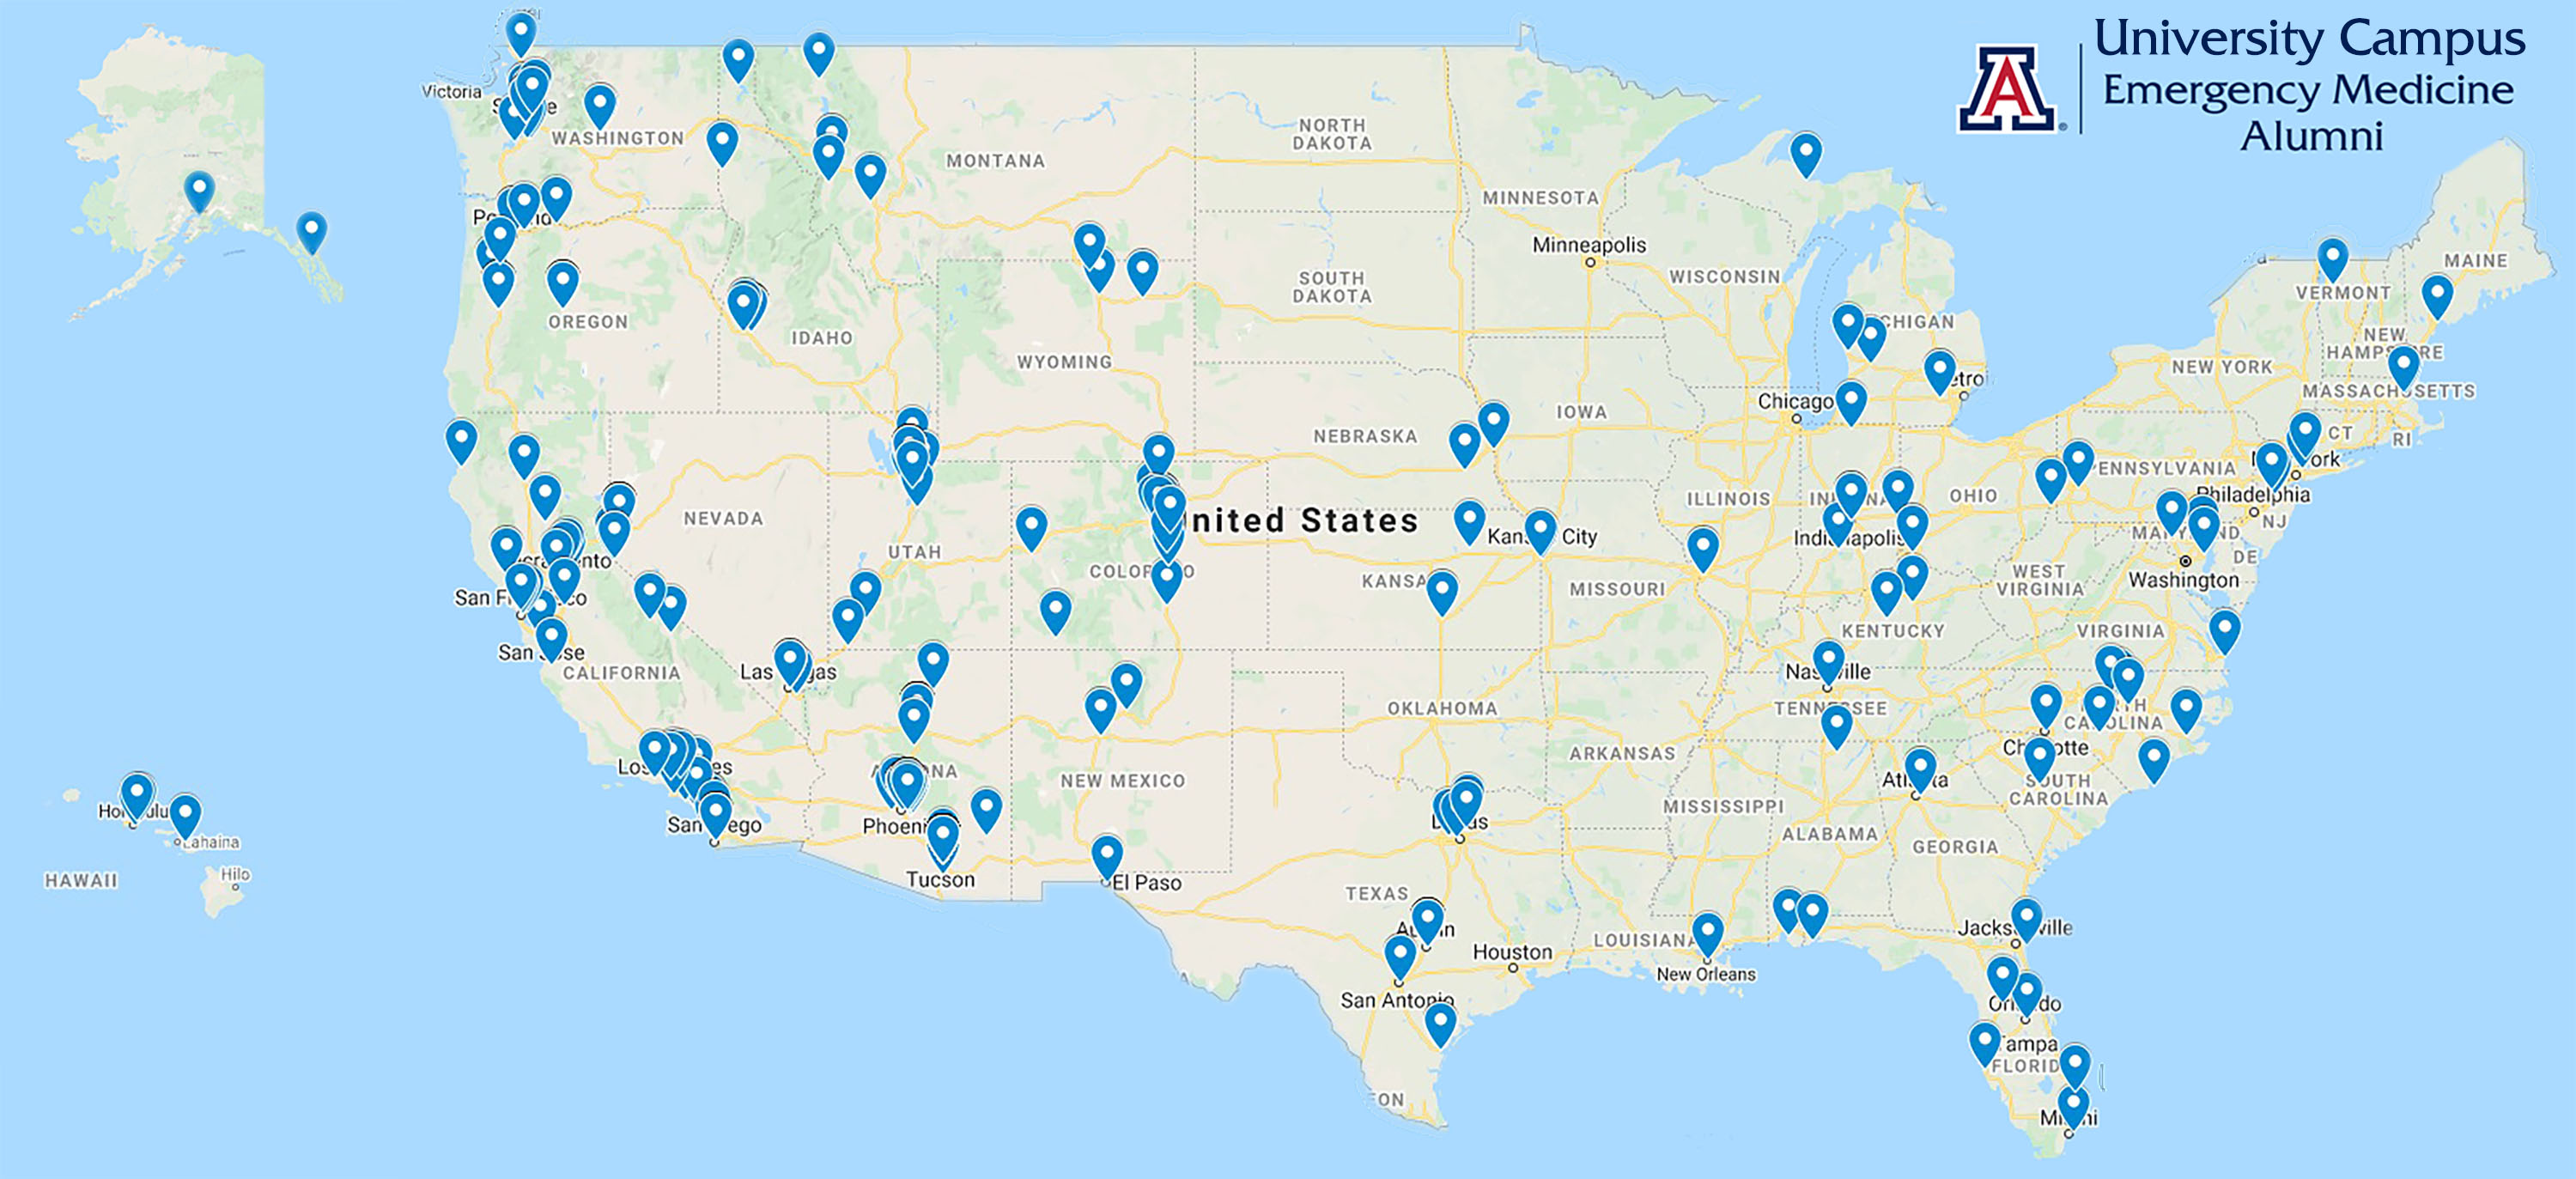 University Campus Alumni Map 2020